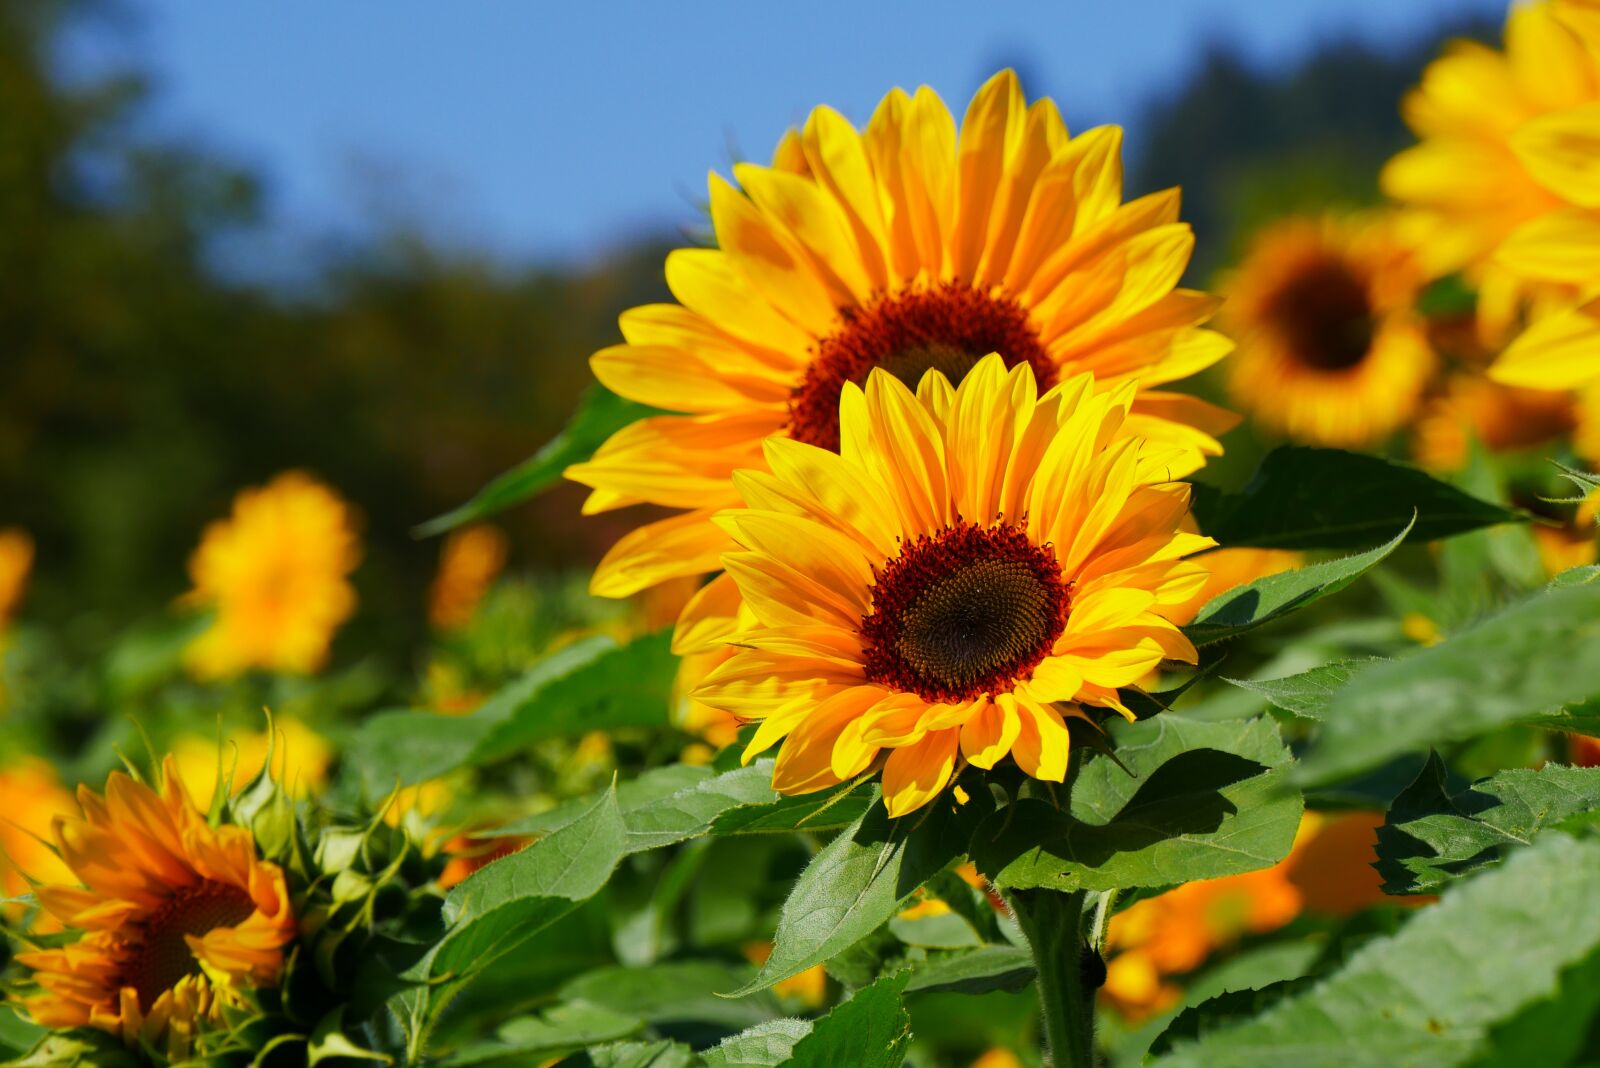 Panasonic DMC-G70 sample photo. Sunflower, summer, yellow photography